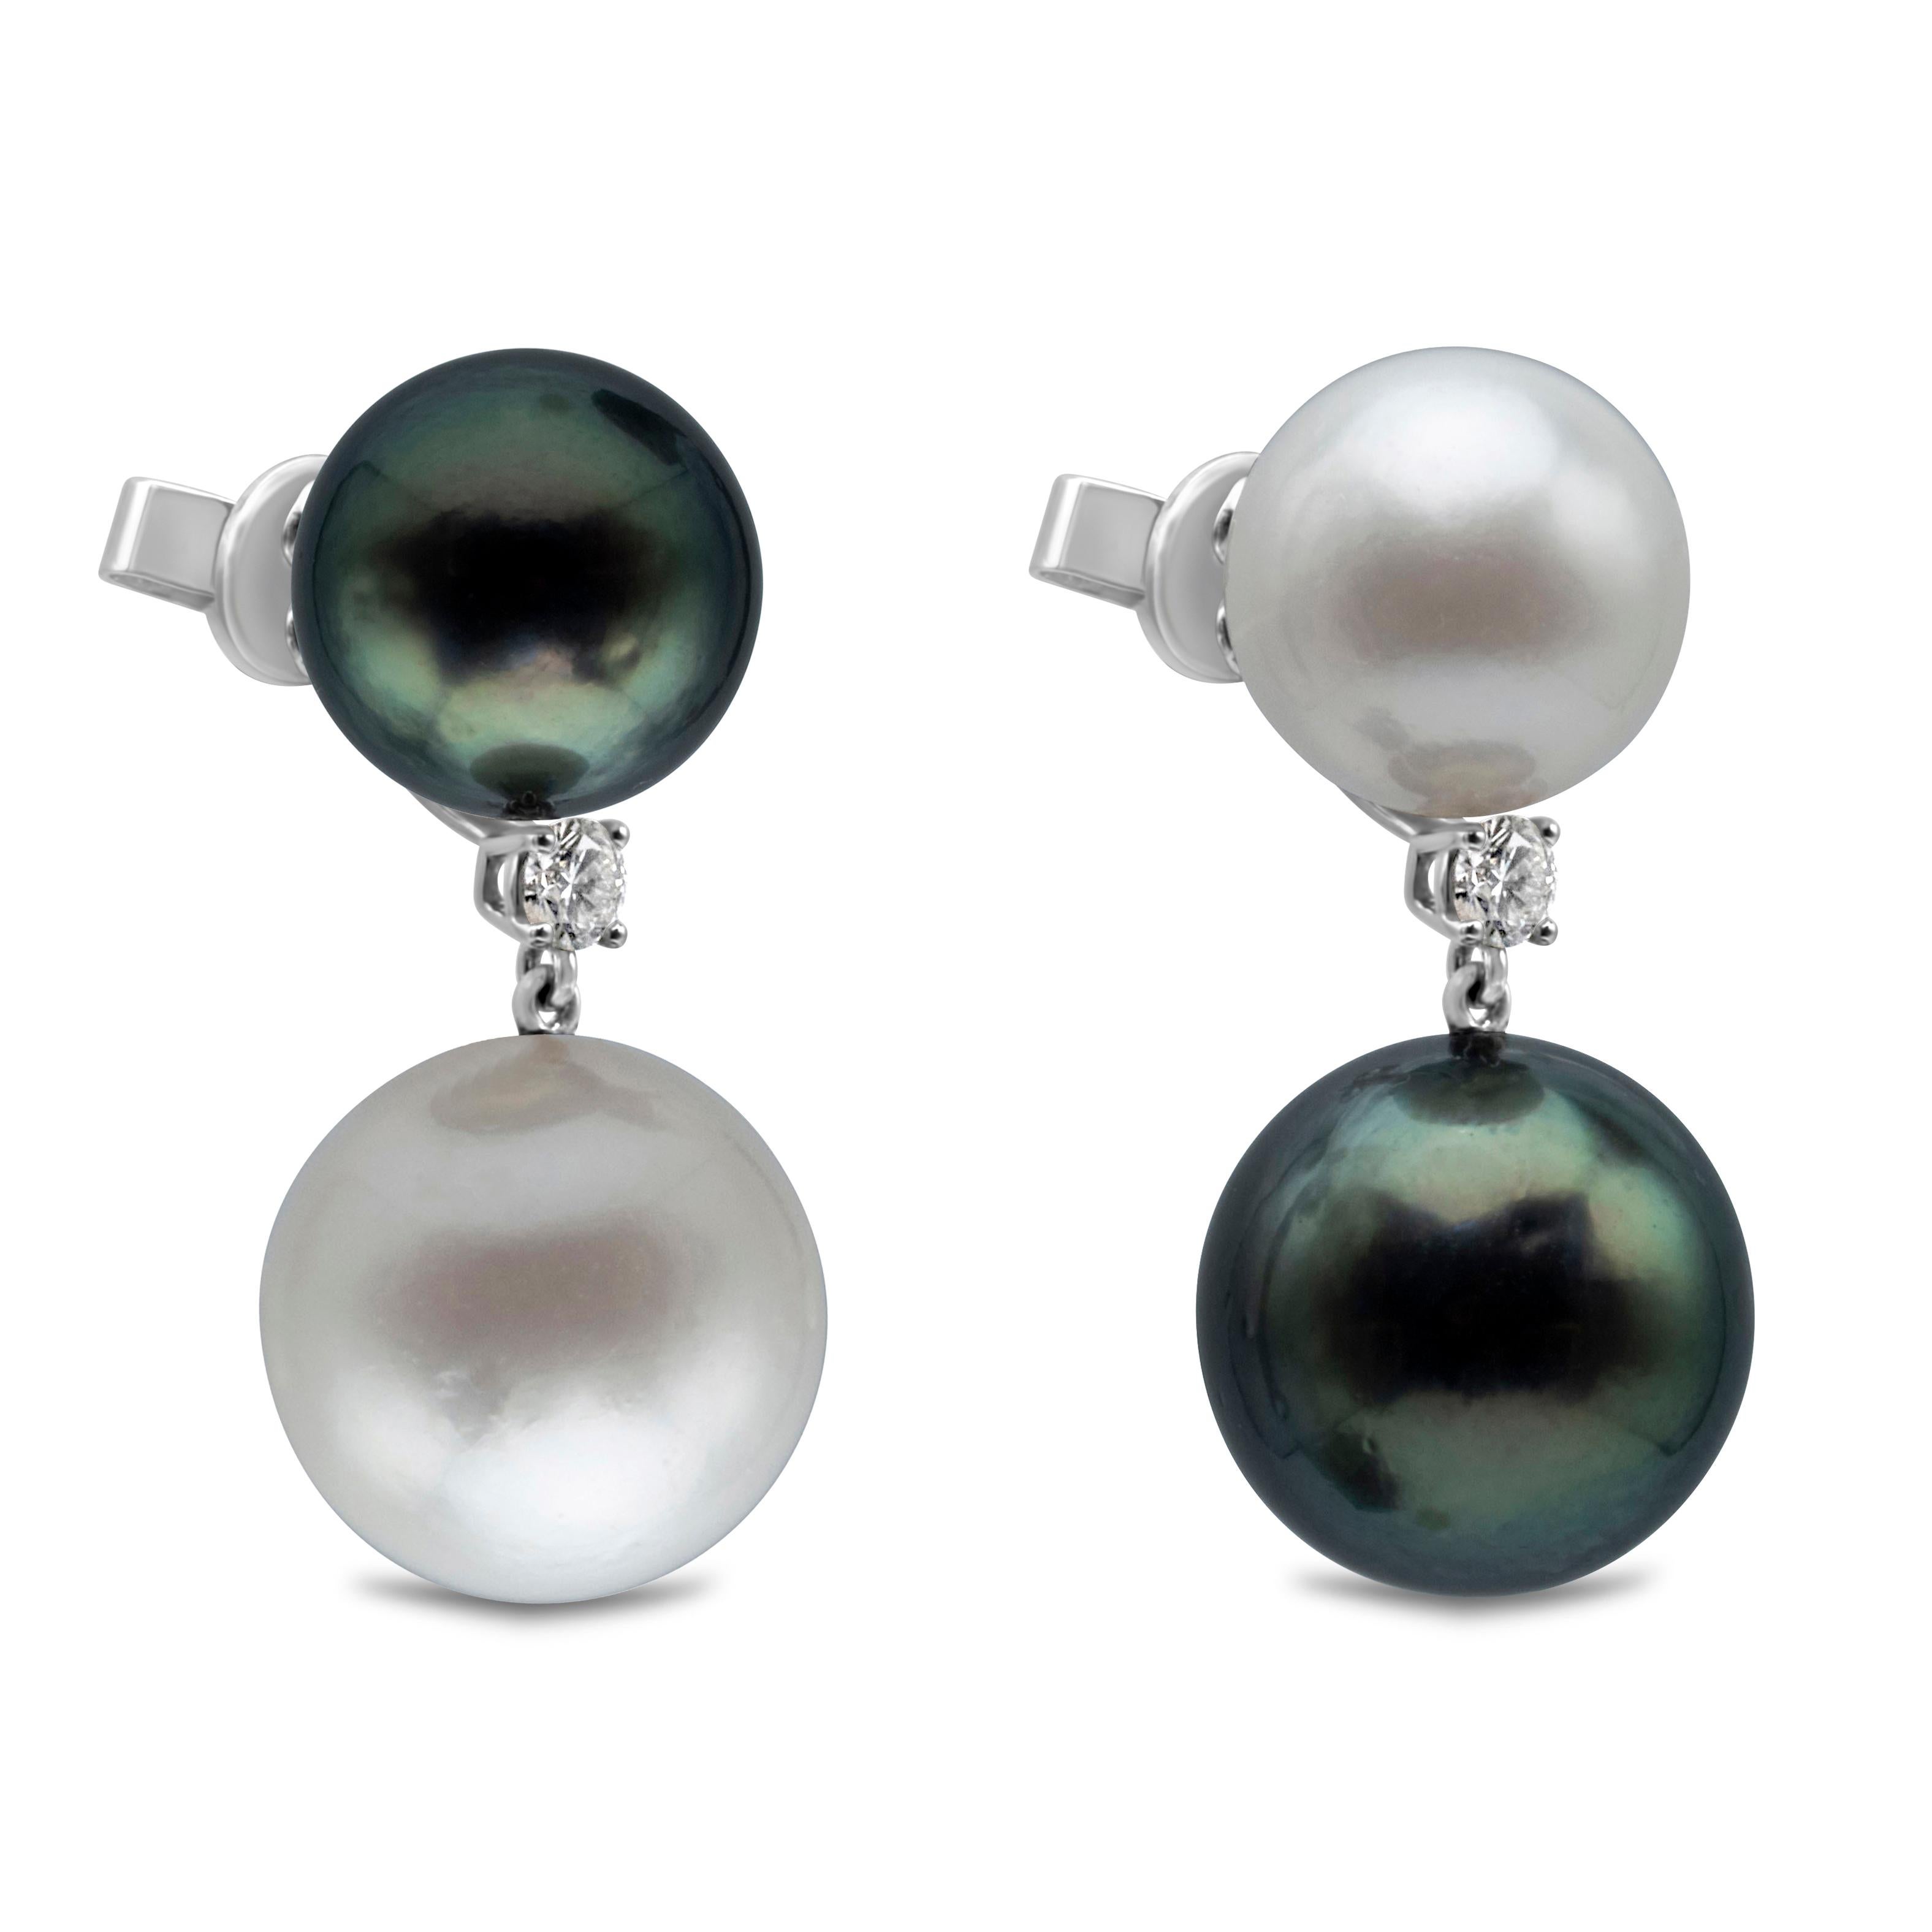 Paire de boucles d'oreilles en perles des mers du Sud et de Tahiti, de 11 à 14 mm de diamètre. Des perles étonnamment assorties sont suspendues à un seul diamant rond pesant 0,25 carat. Fabriqué en or blanc 18 carats. 

Ce modèle est disponible avec